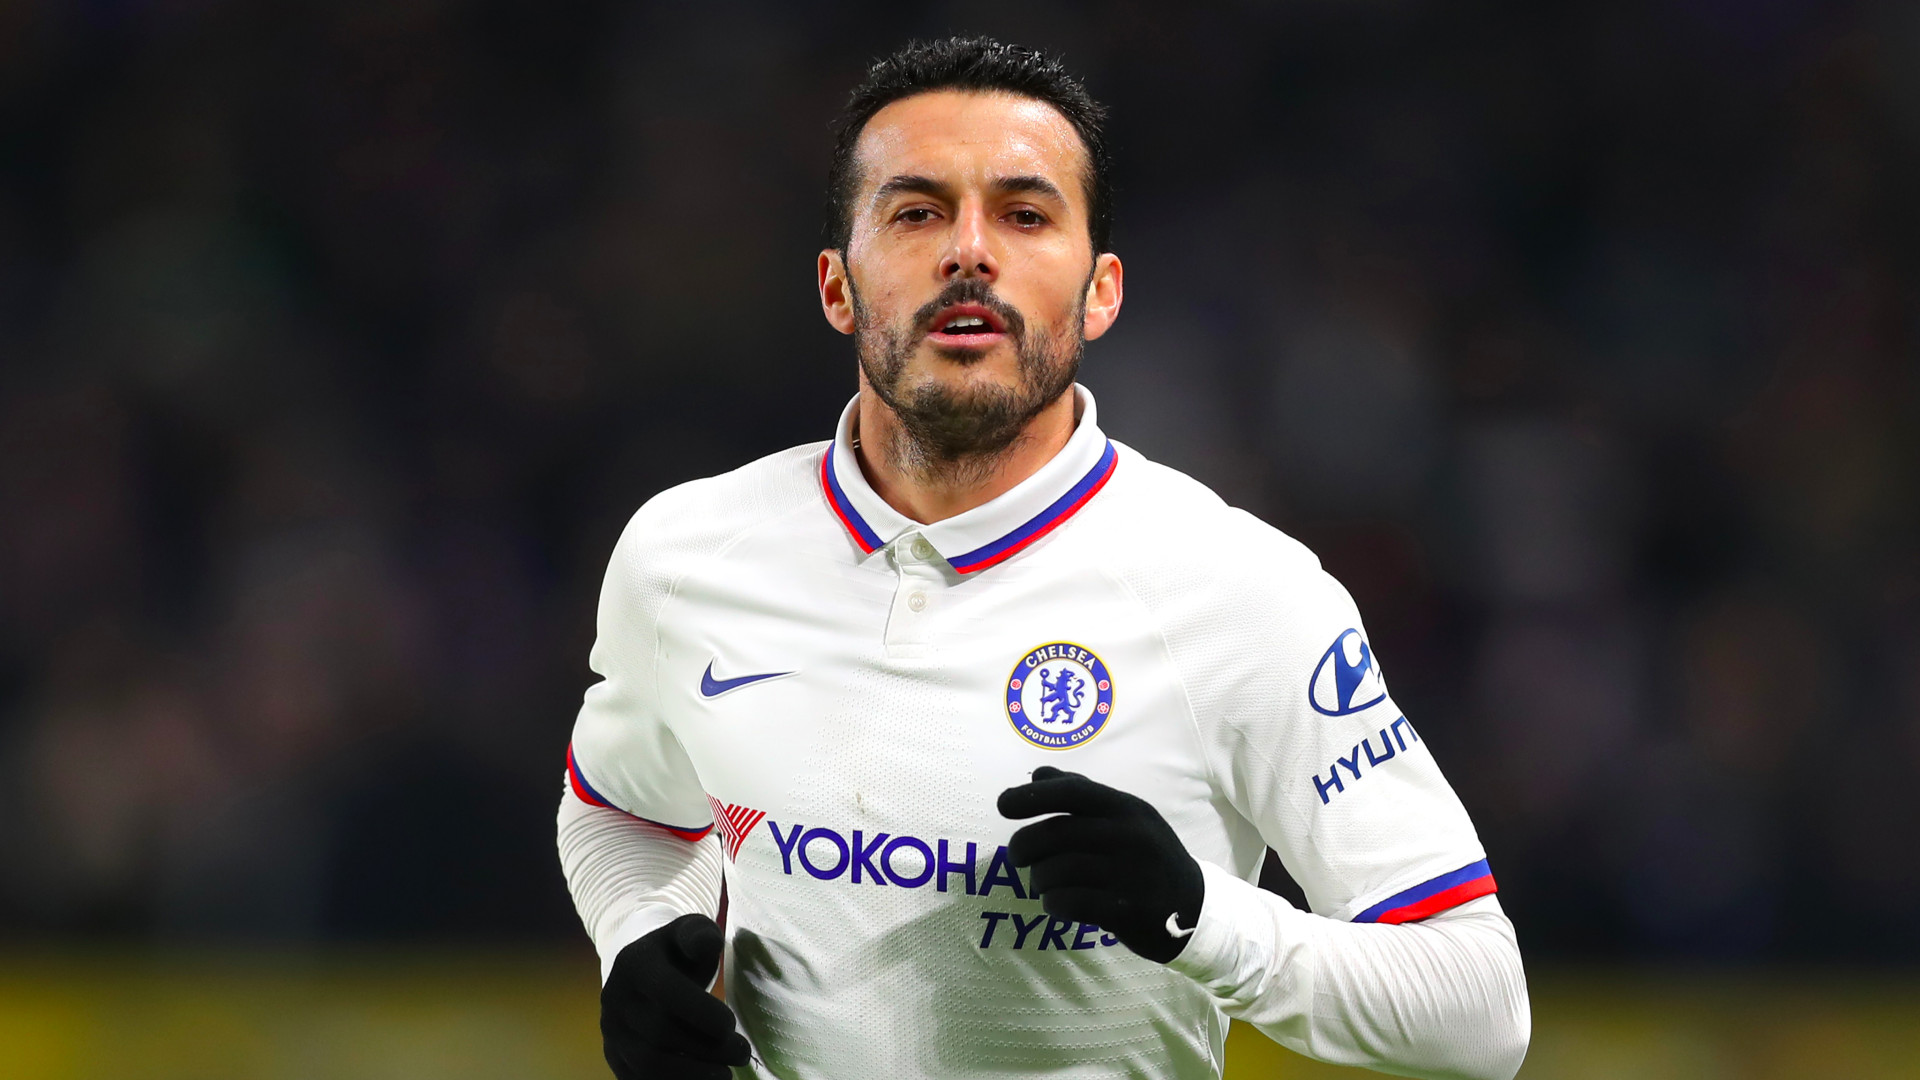 Pedro quitte Chelsea